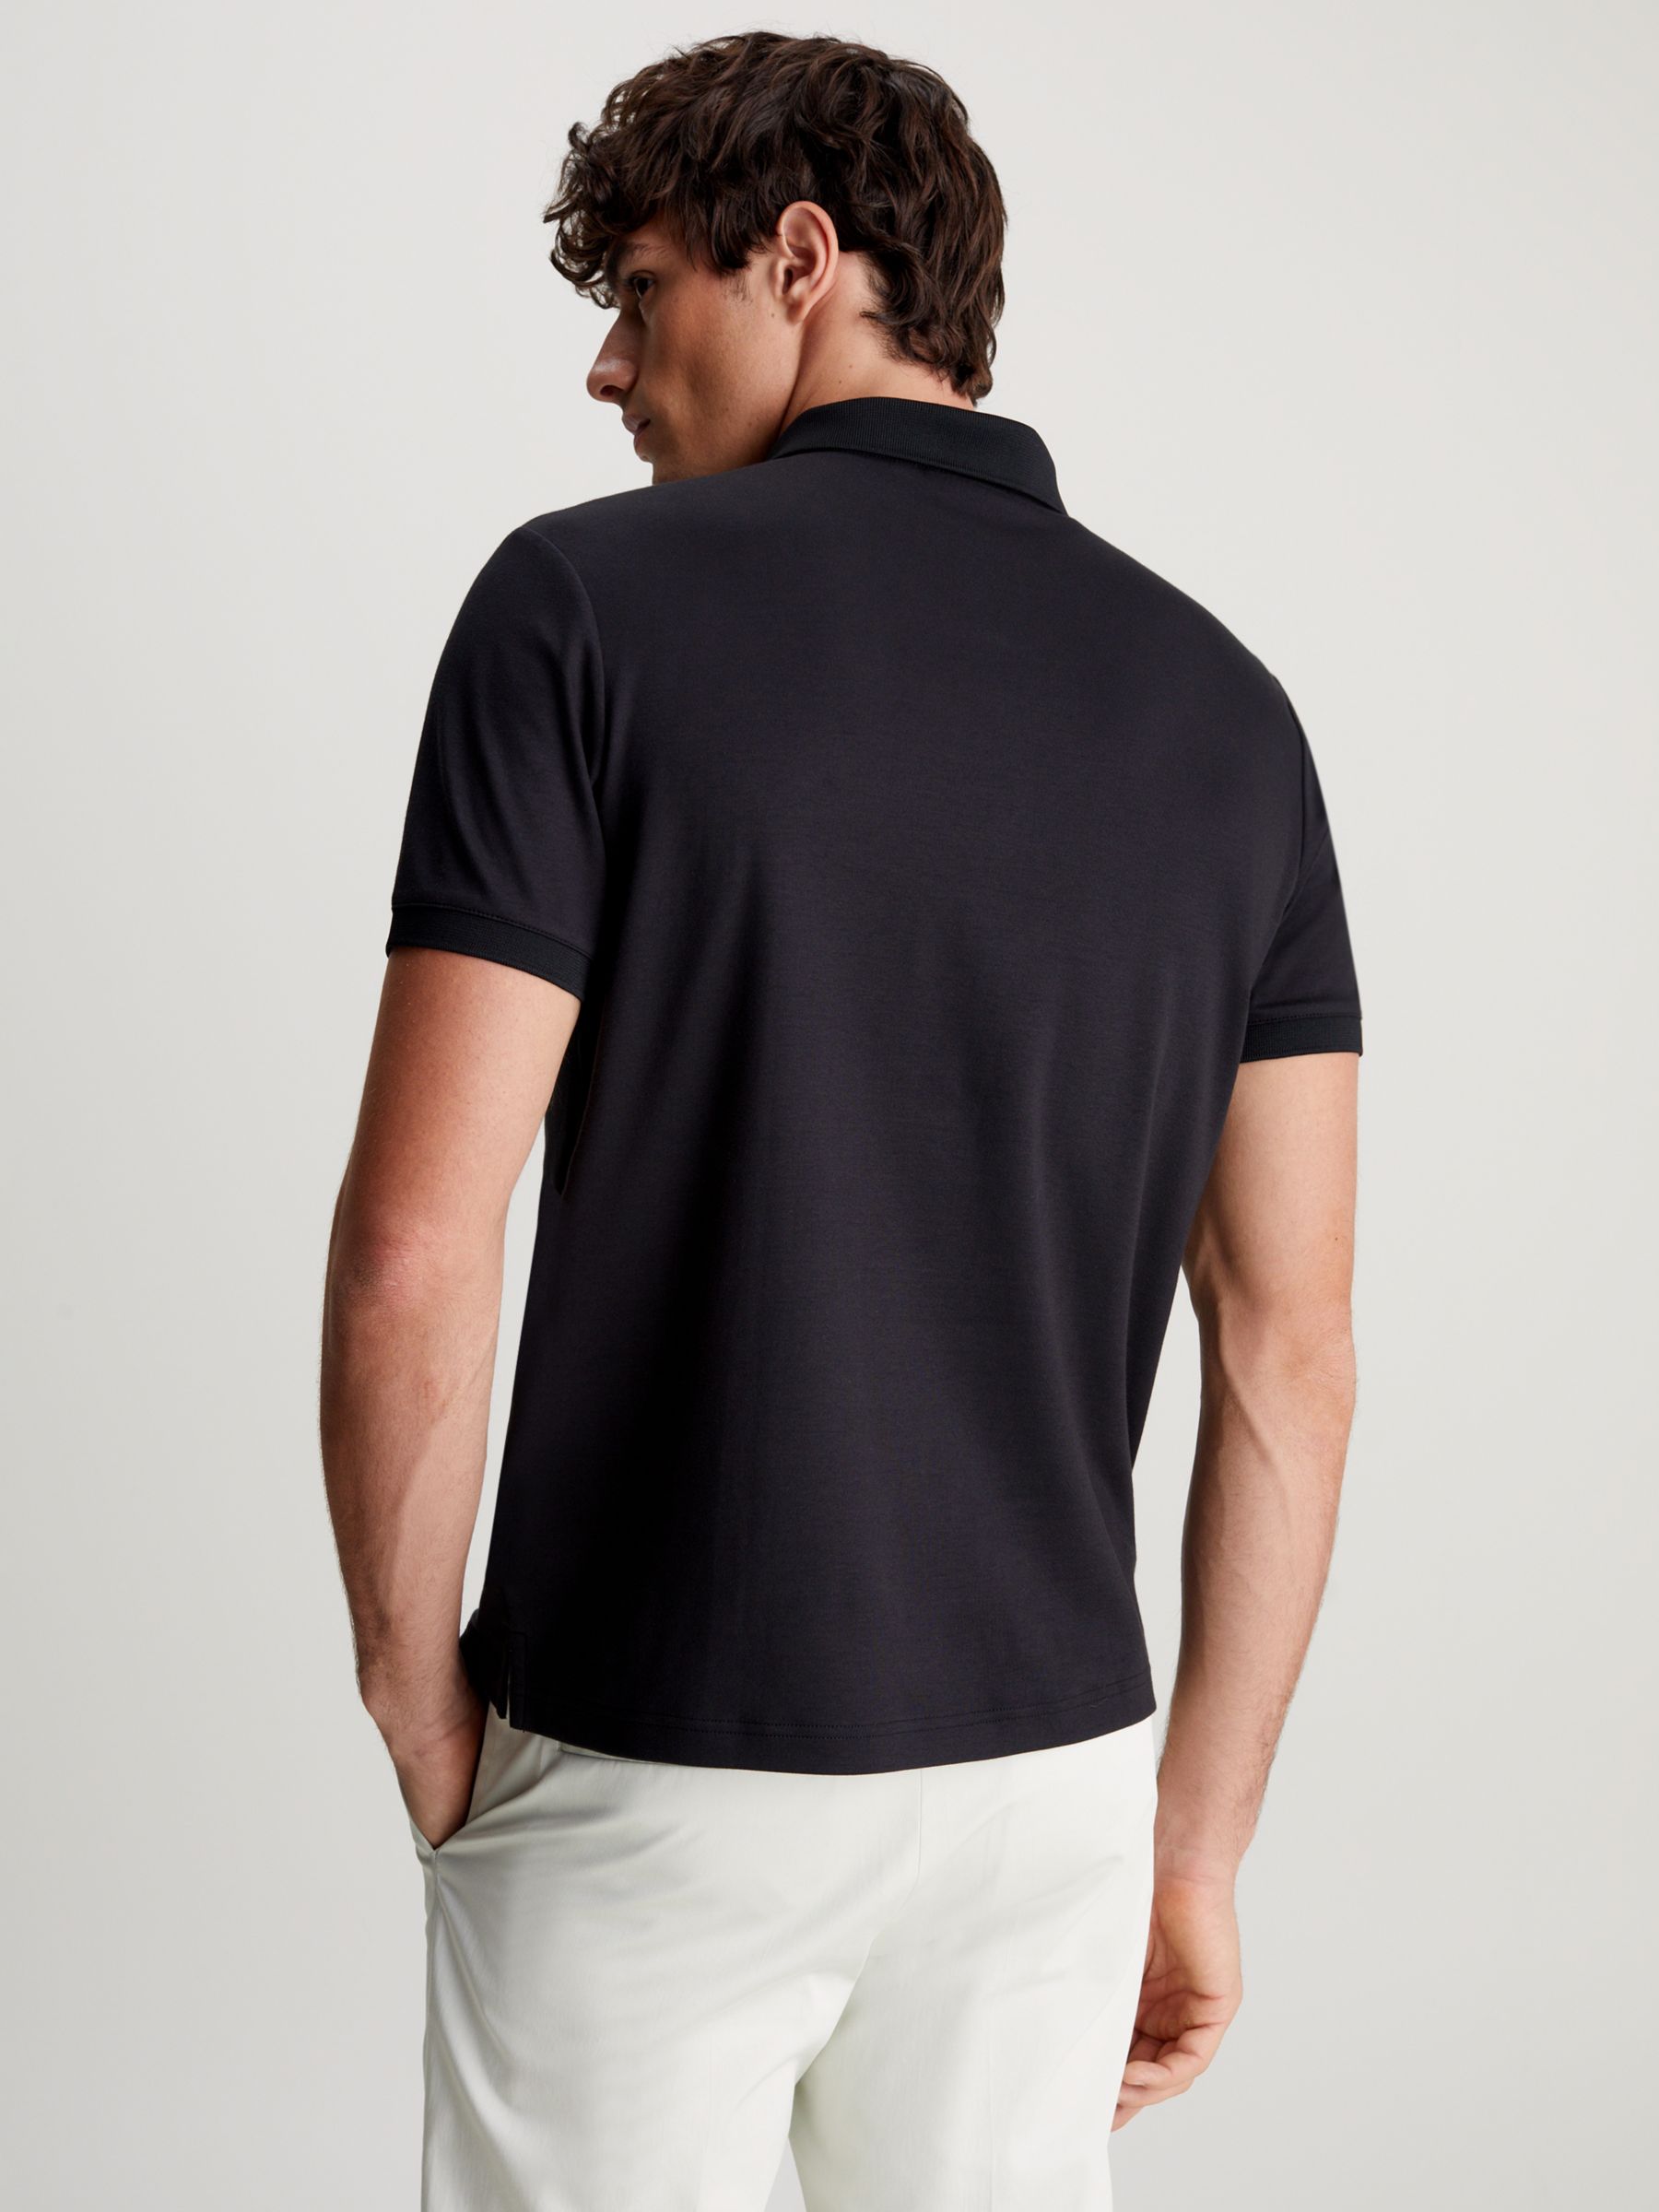 Calvin Klein Zip Neck Organic Cotton Polo Shirt, Ck Black, L